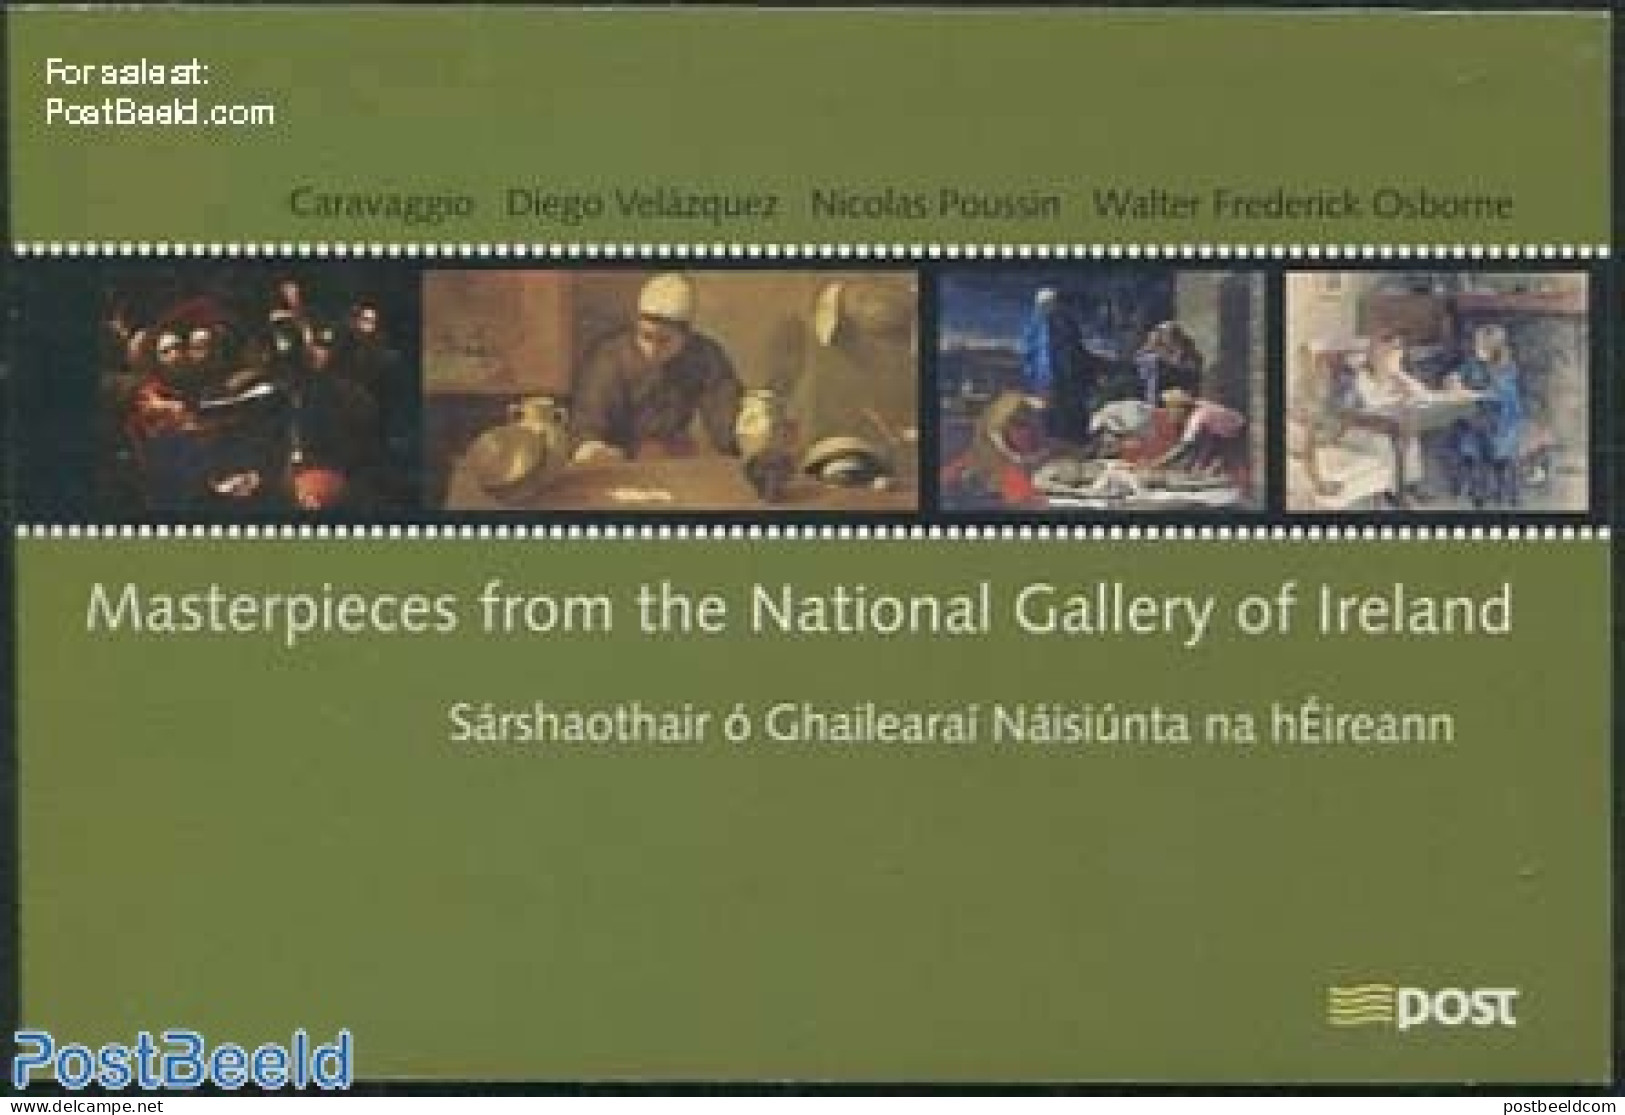 Ireland 2004 National Gallery Prestige Booklet, Mint NH, Stamp Booklets - Art - Paintings - Ongebruikt